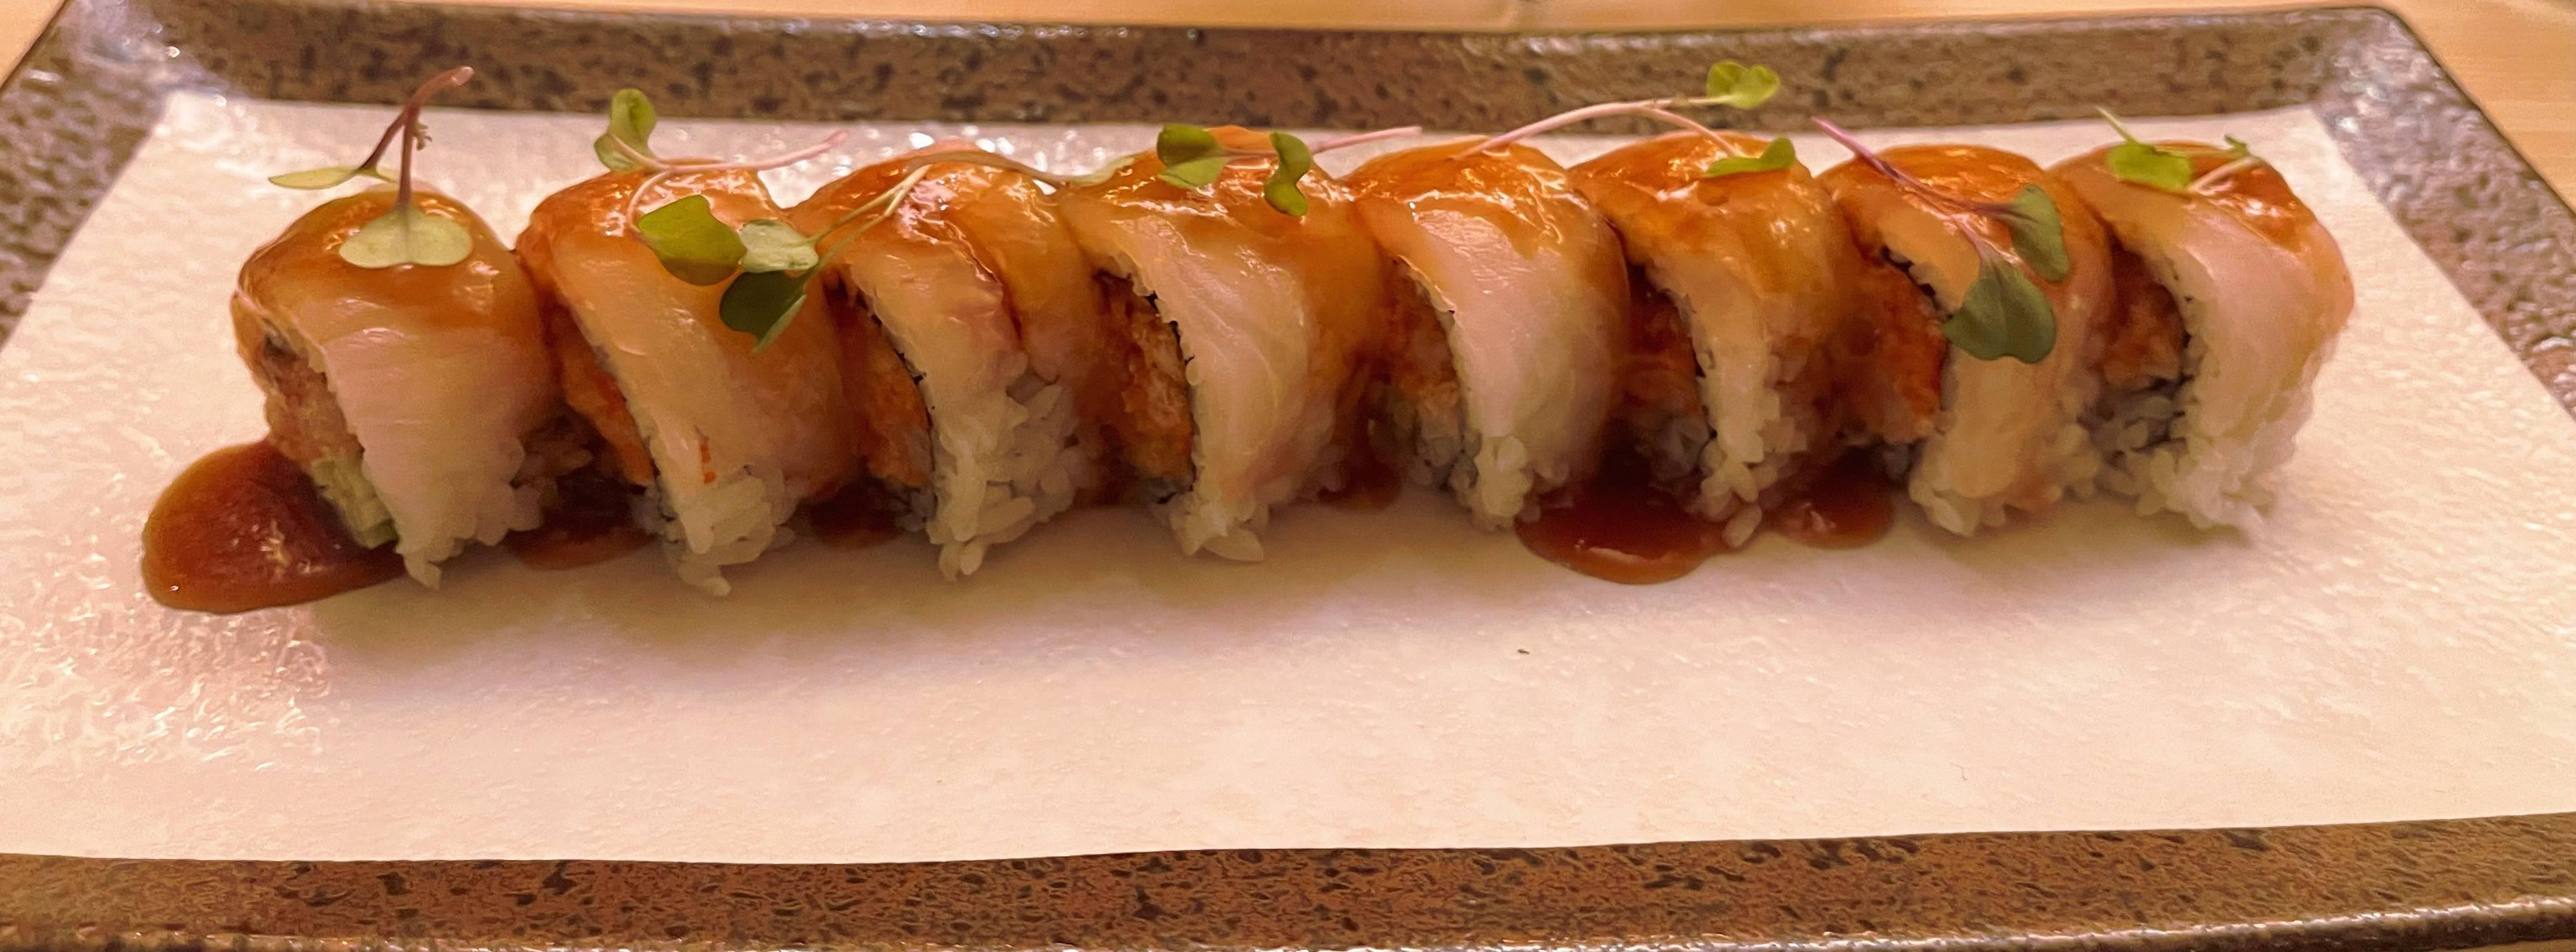 Ikyu 一休 (Ikyu sushi)